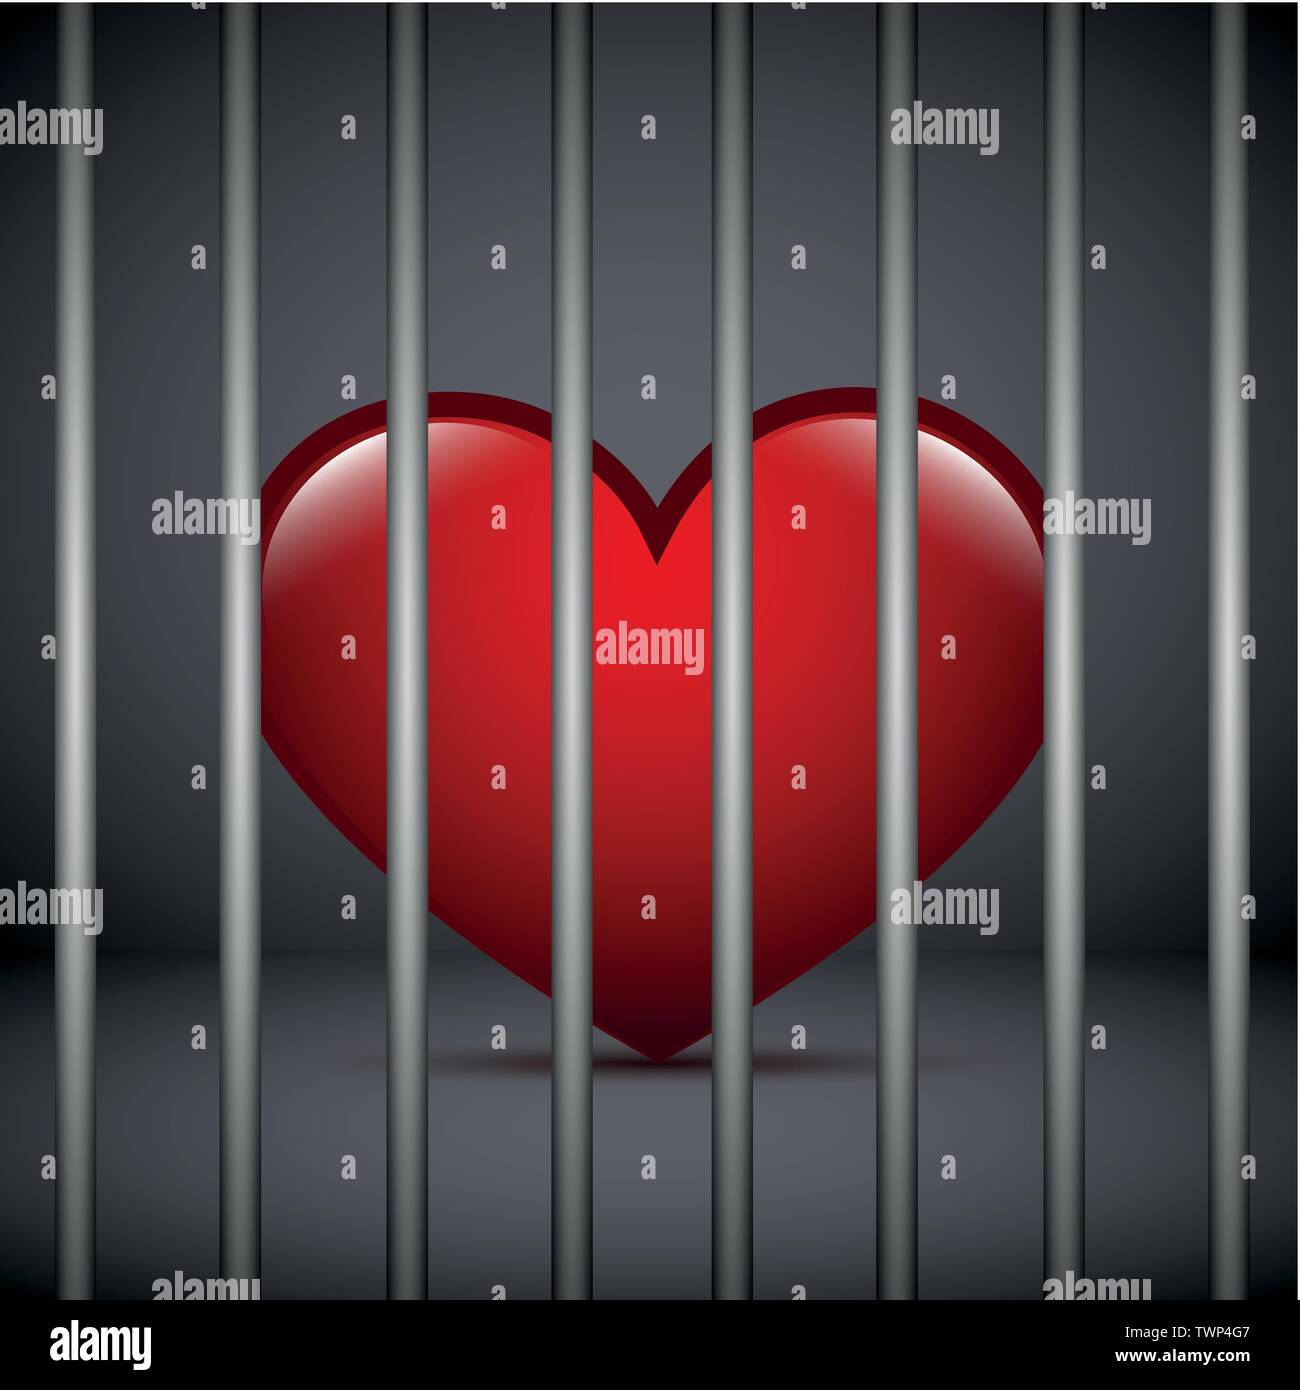 Rotes Herz in einem Gefängnis auf dunklem Hintergrund Vektor-illustration EPS 10. Stock Vektor